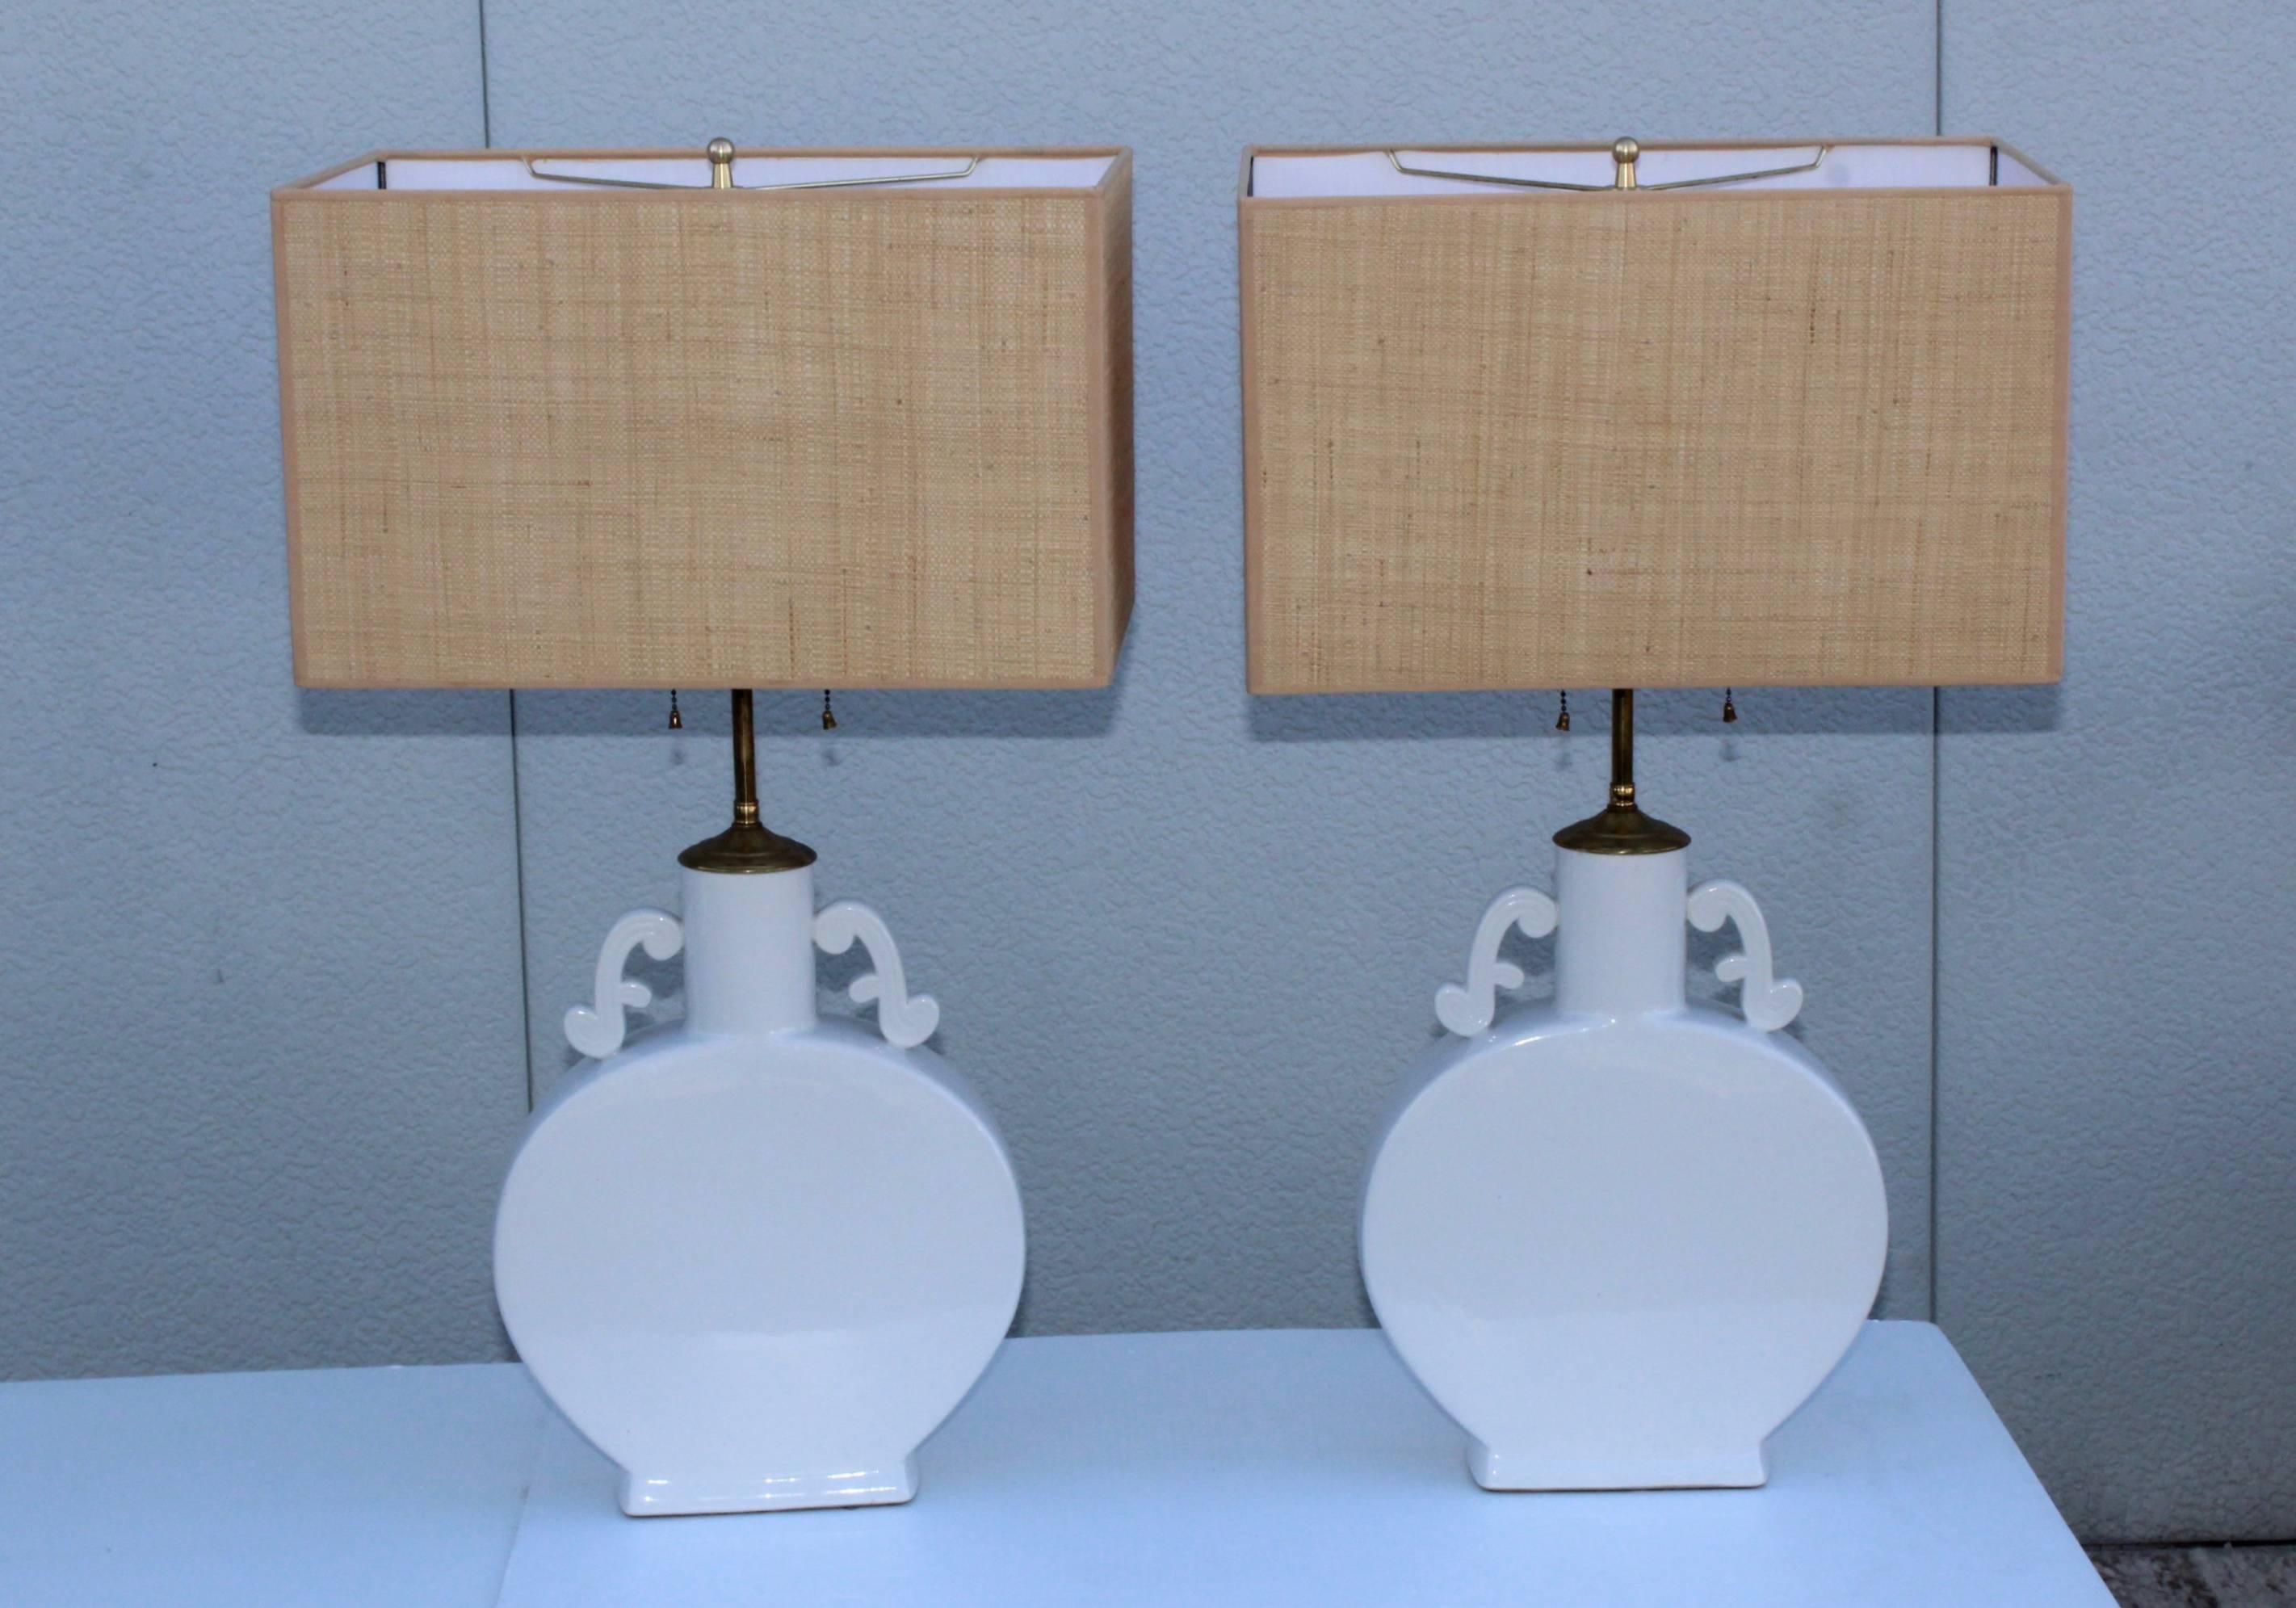 Lampes de table Blanc De Chine des années 1960 avec quincaillerie en laiton.
Les lampes ont été recâblées par des professionnels et sont prêtes à l'emploi.

Nuances pour la photographie uniquement.